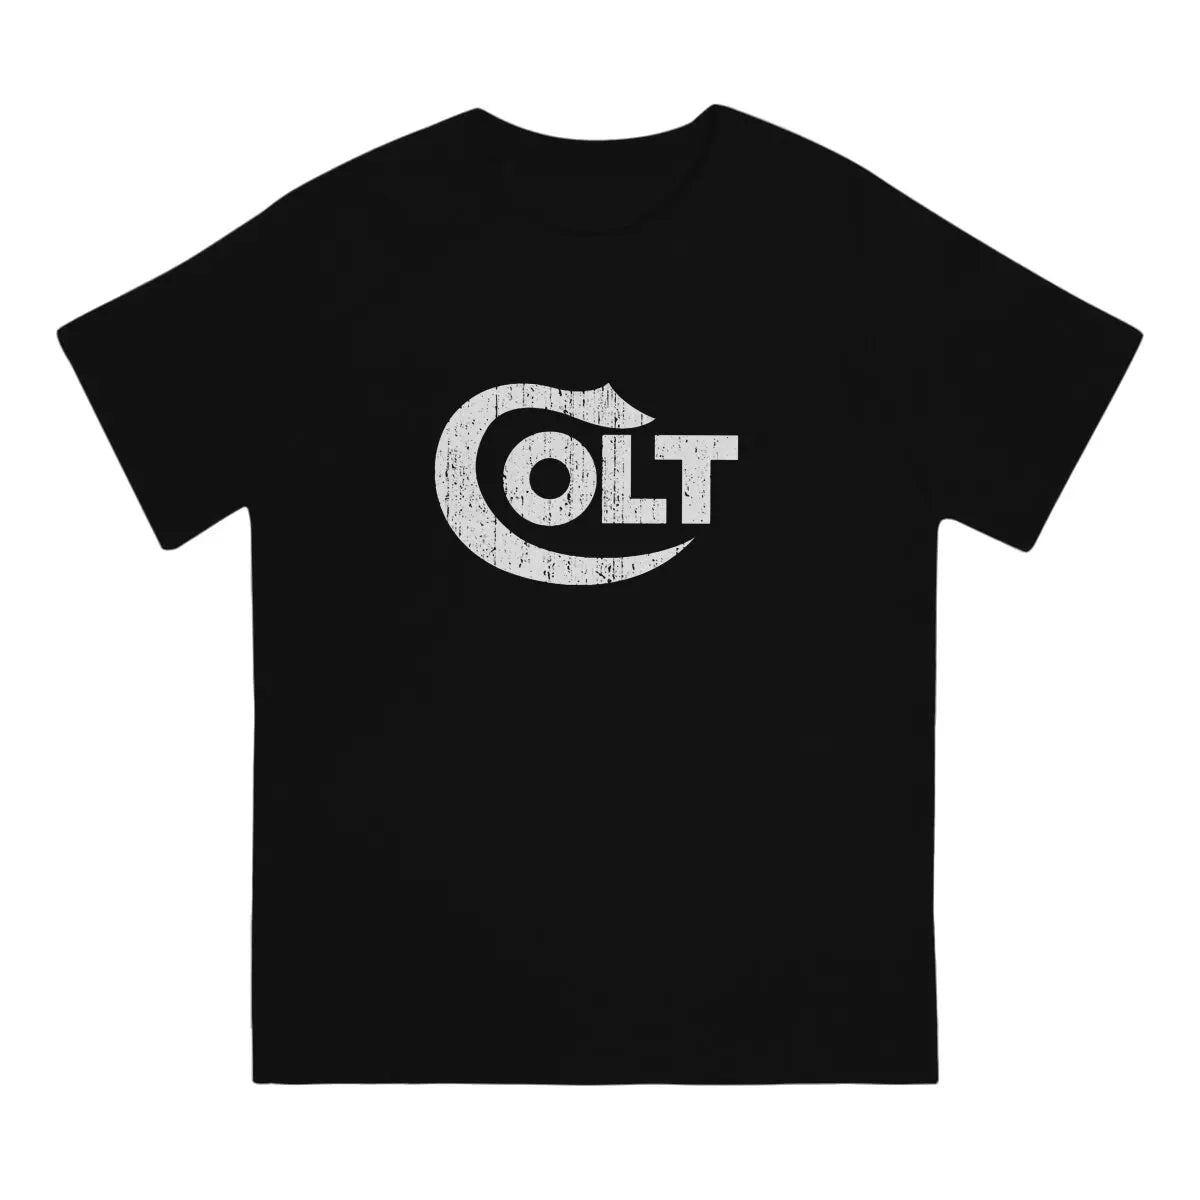 Colt Firearms Men T Shirts